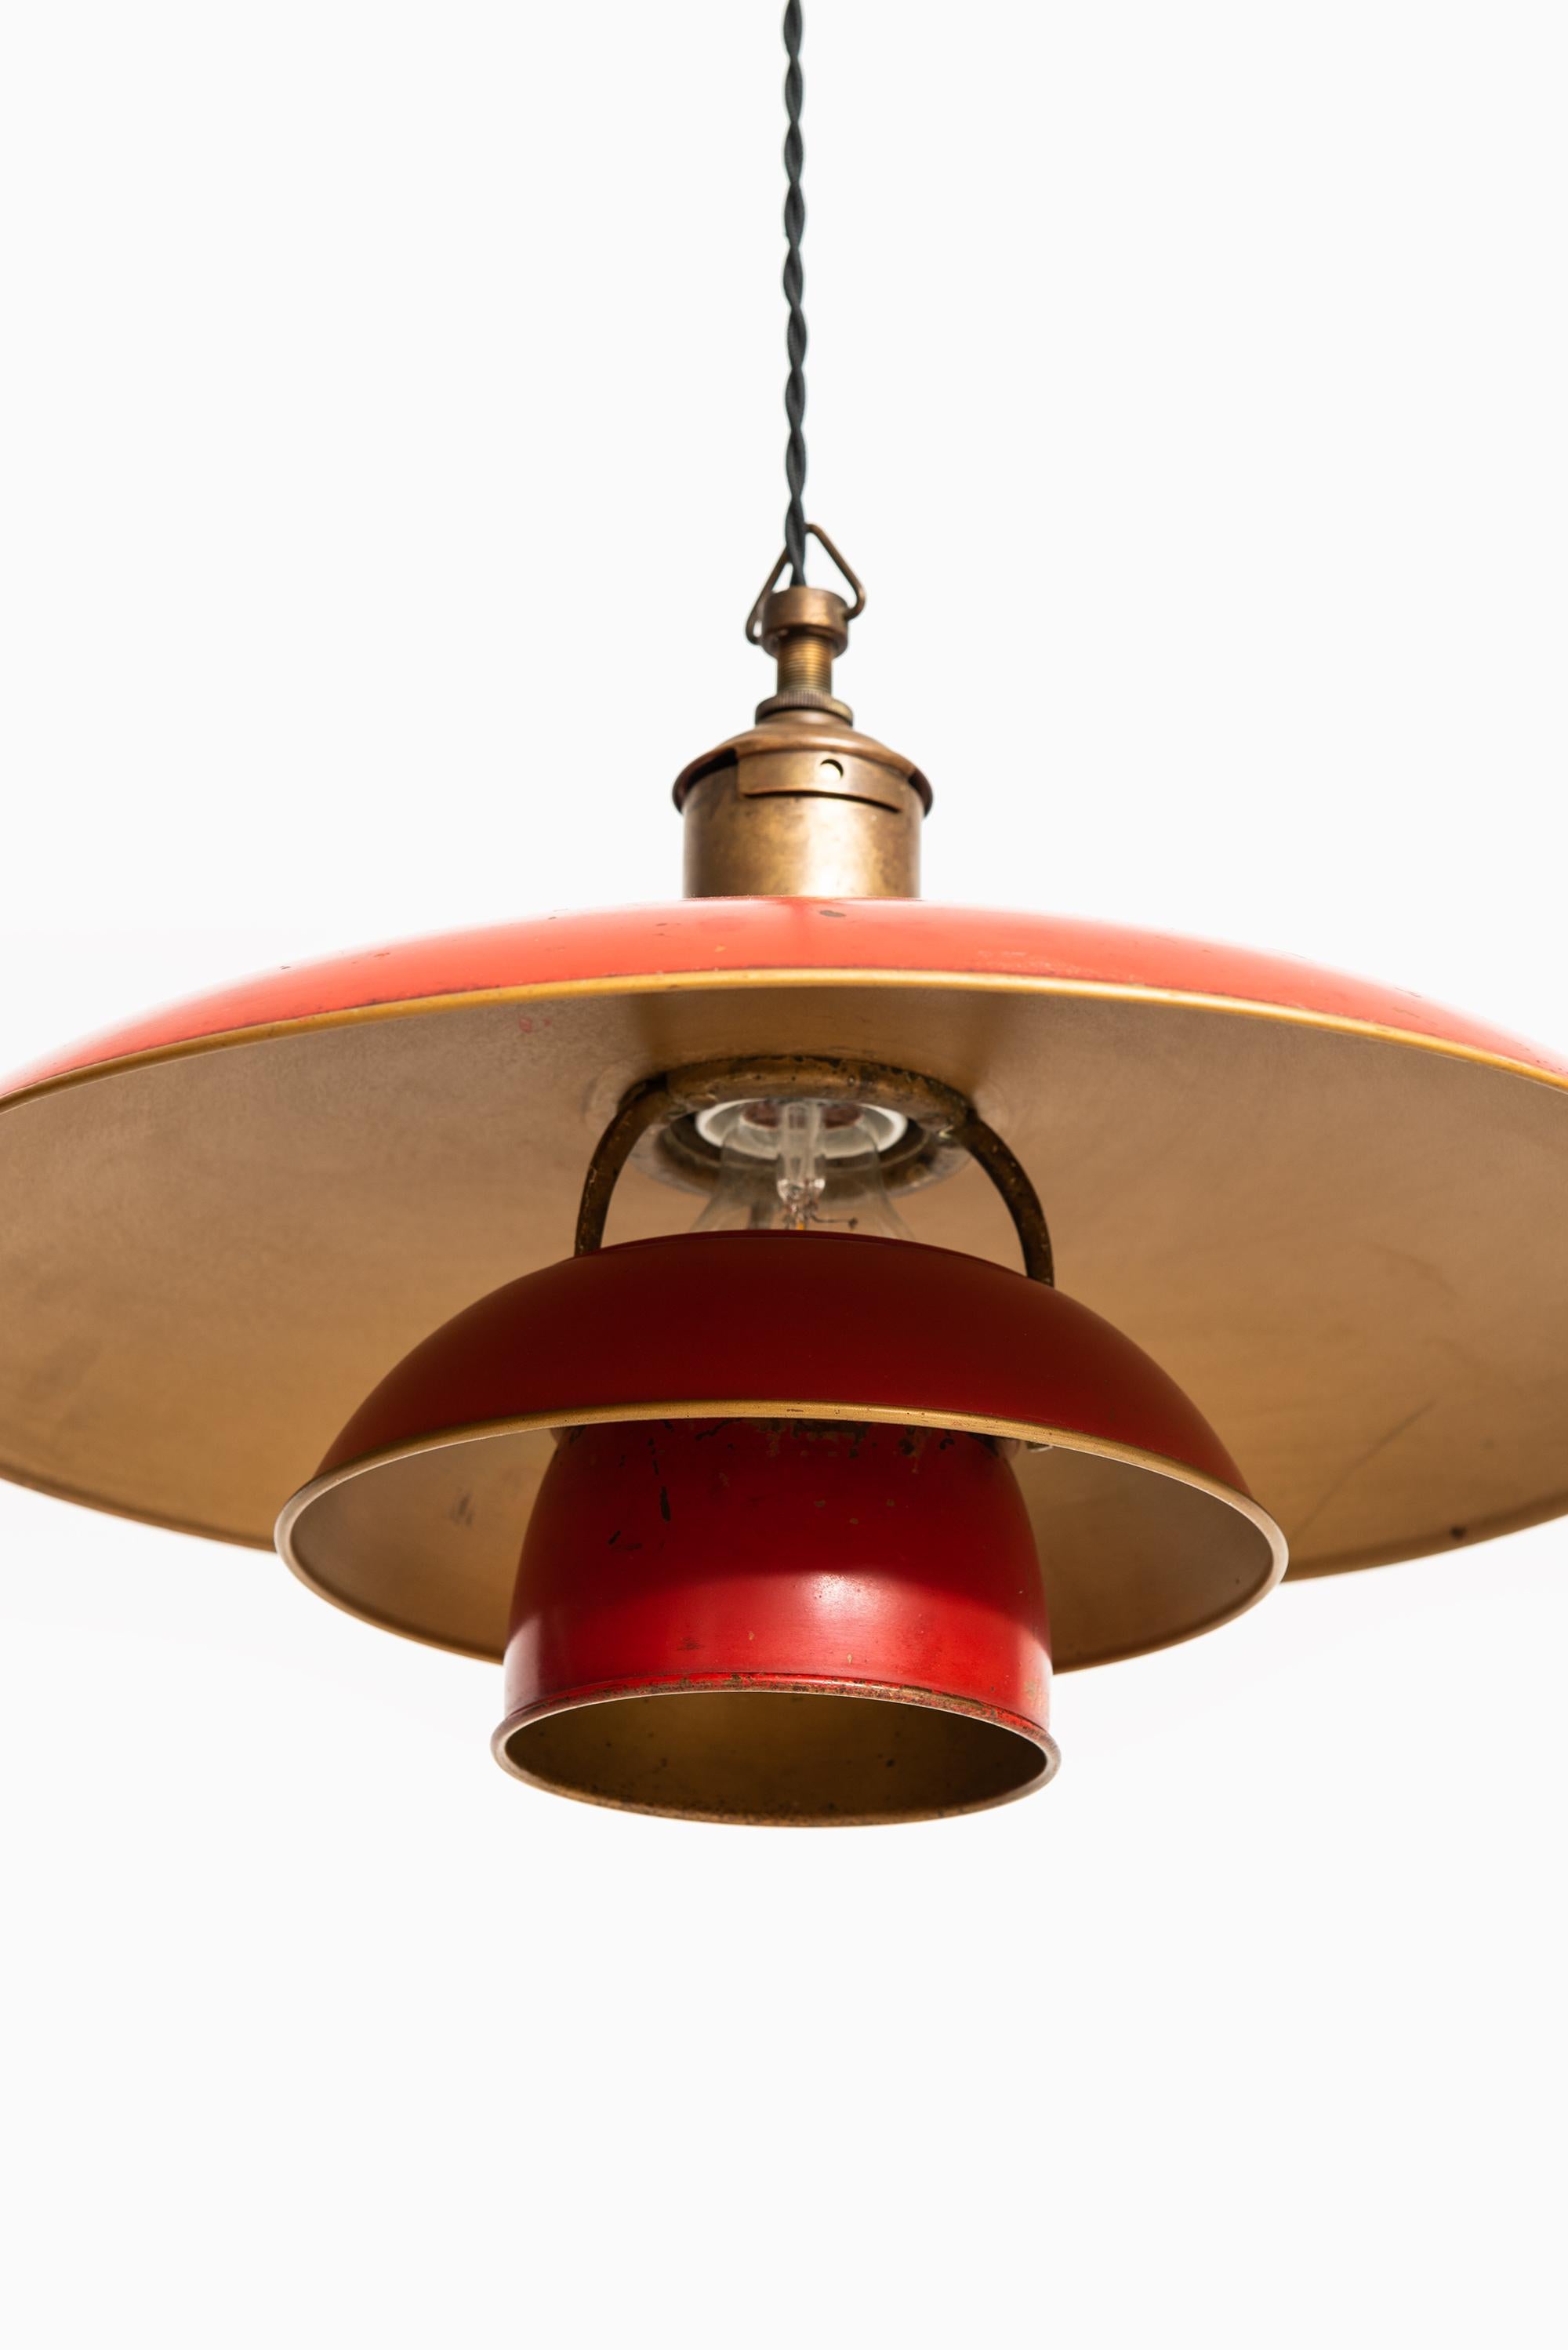 Scandinavian Modern Poul Henningsen Early Ceiling Lamp Model PH-4/3 by Louis Poulsen in Denmark